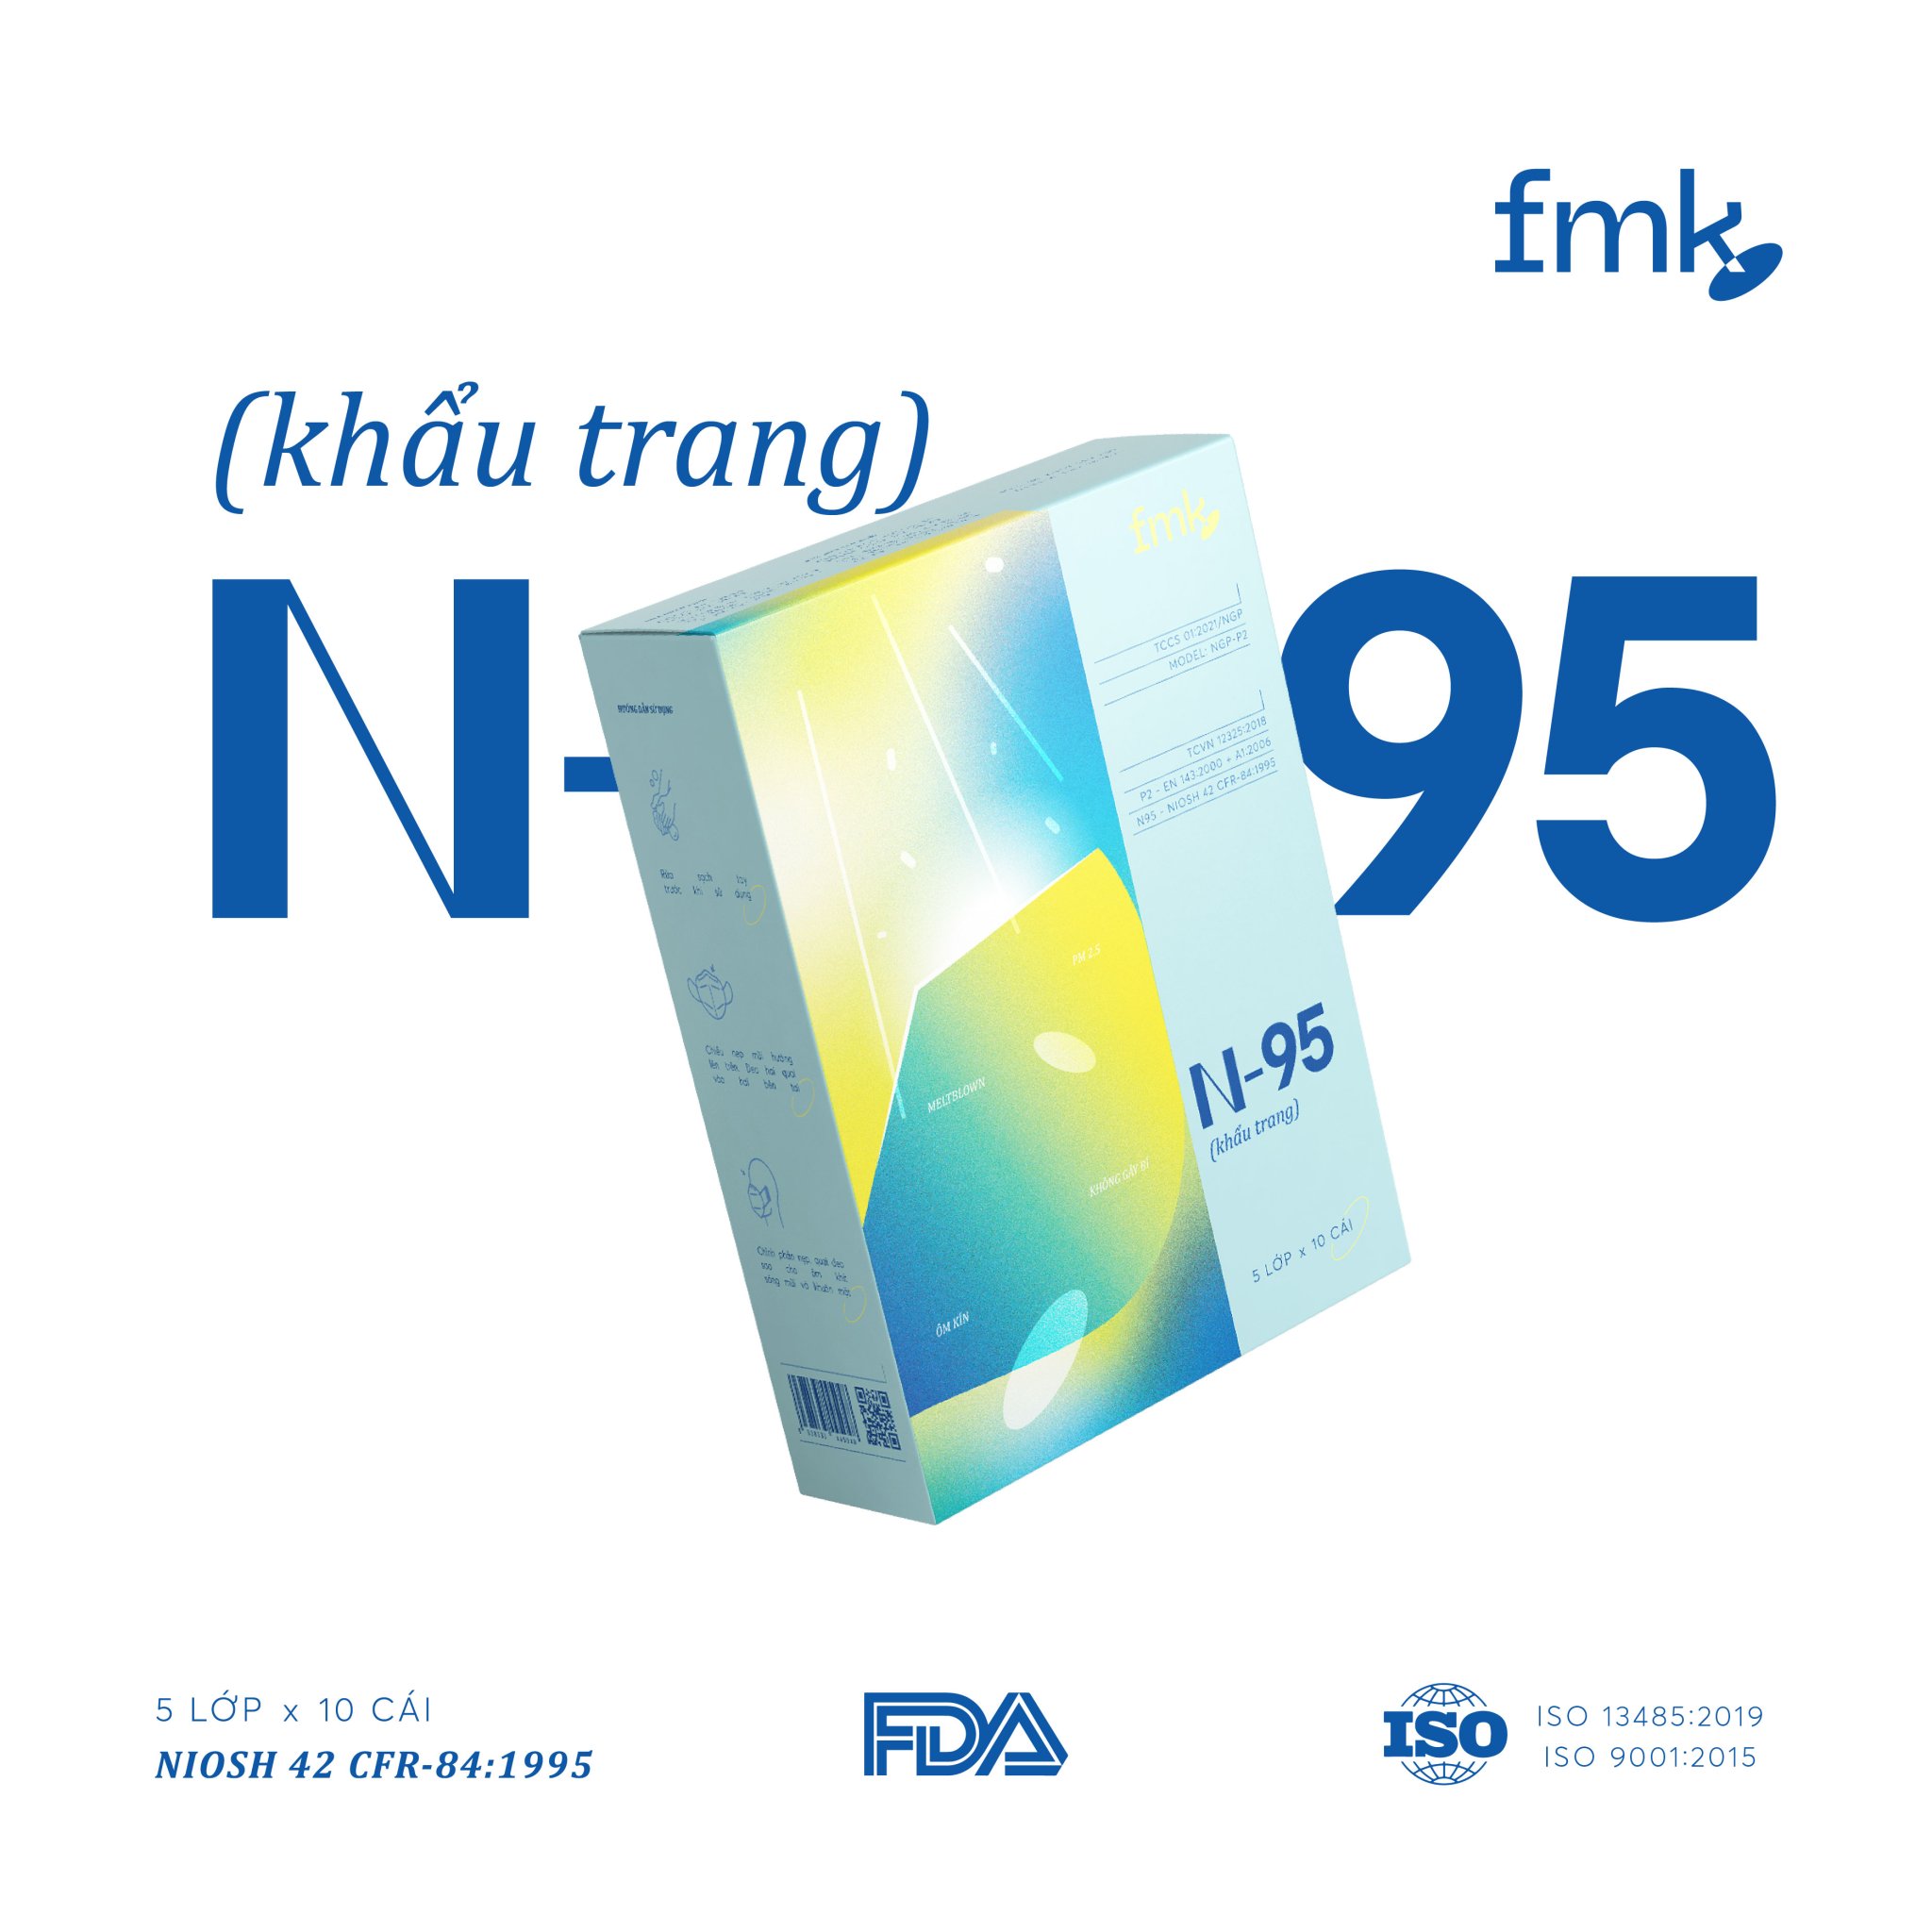 Khẩu trang N95 kháng khuẩn cao cấp - 5 lớp bảo vệ tối ưu - Thương hiệu FMK - Best Seller tại Nhật - Đạt tiêu chuẩn NIOSH 42 CFR 84